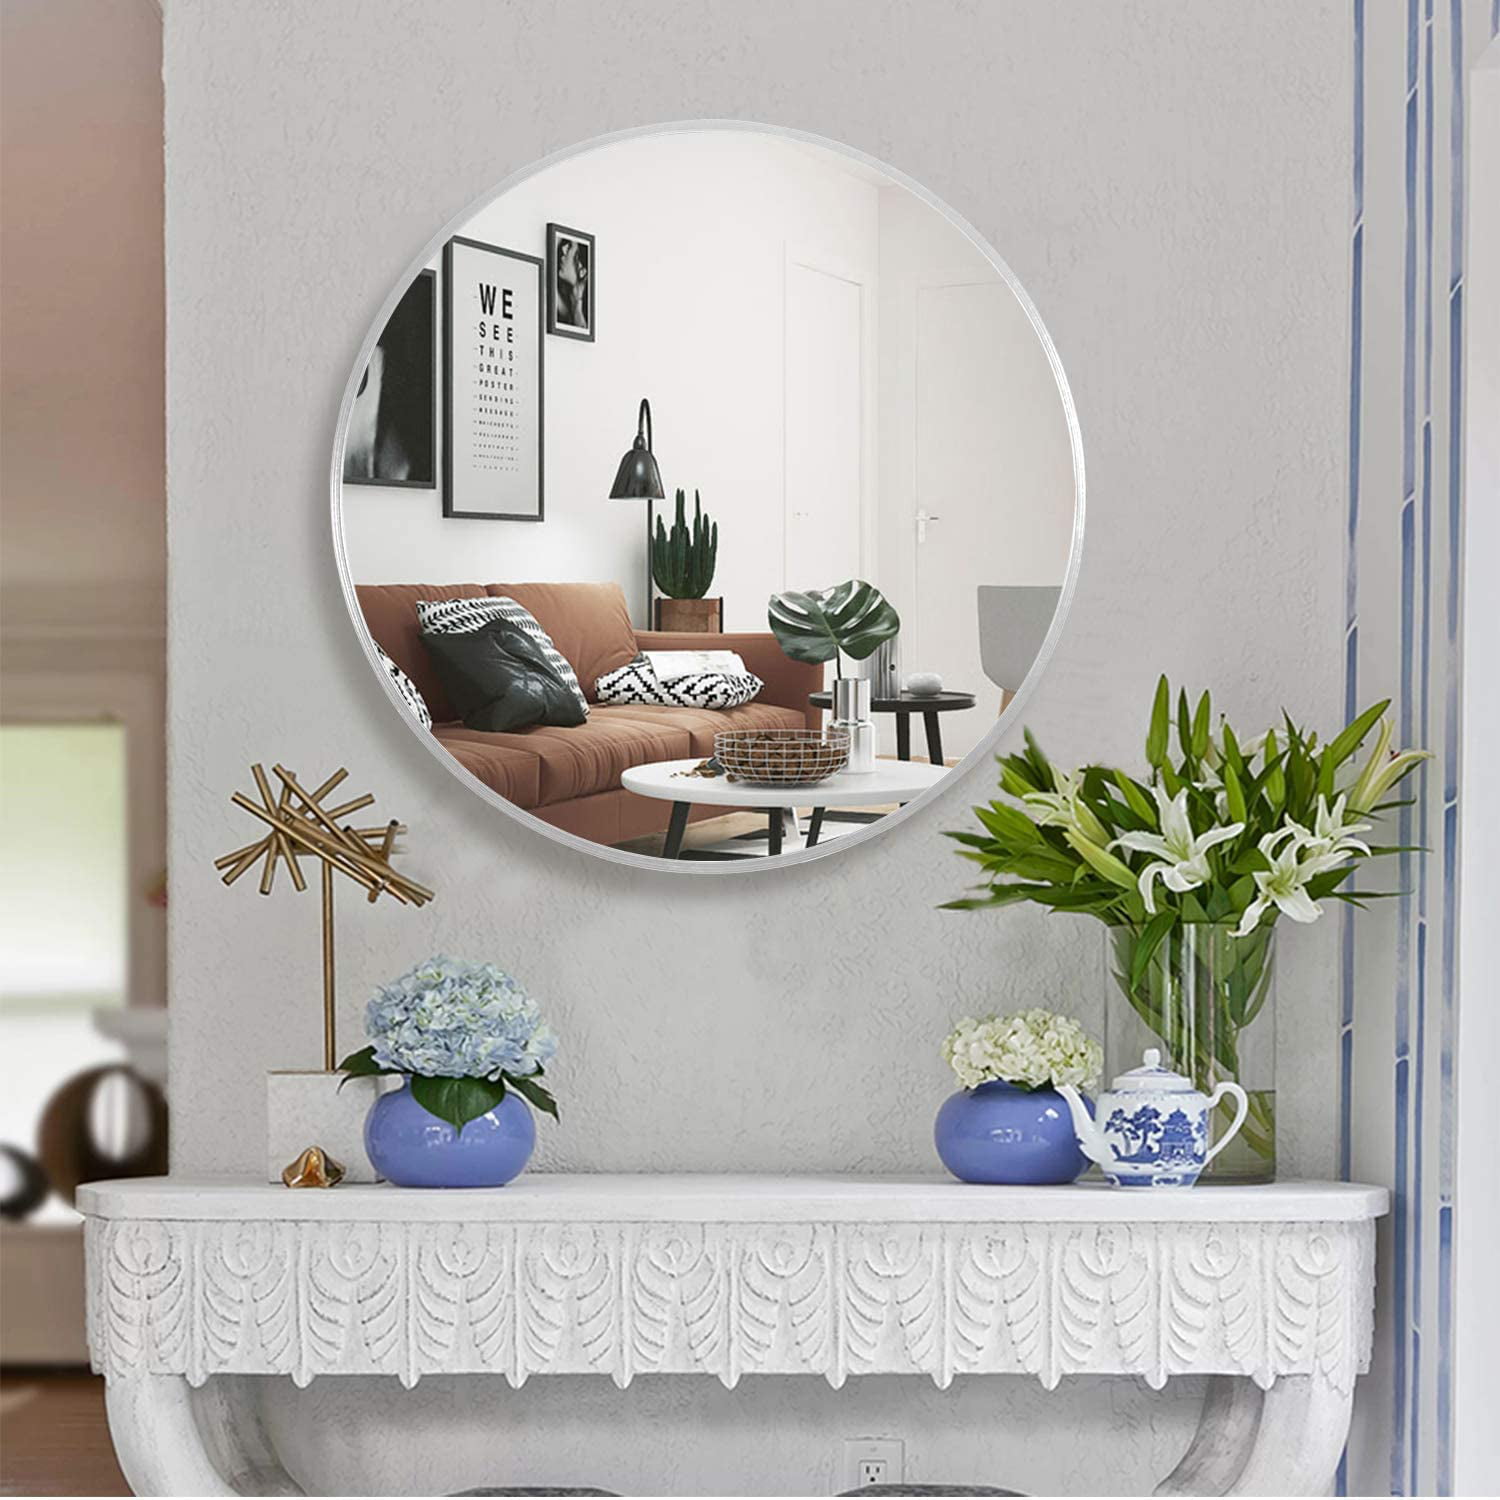 Home Wall Mirror Decor » Arthatravel.com